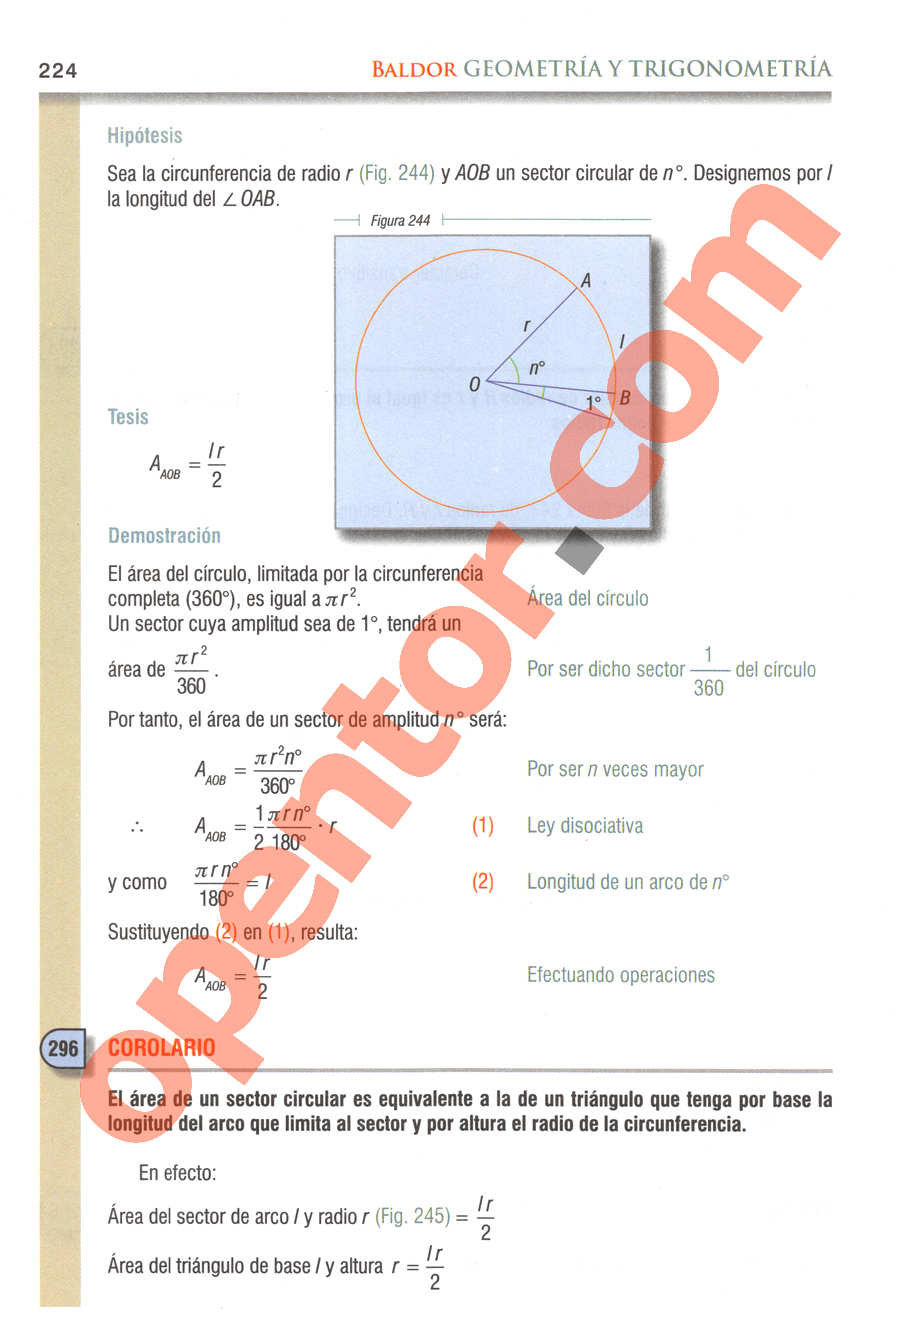 Geometría y Trigonometría de Baldor - Página 224